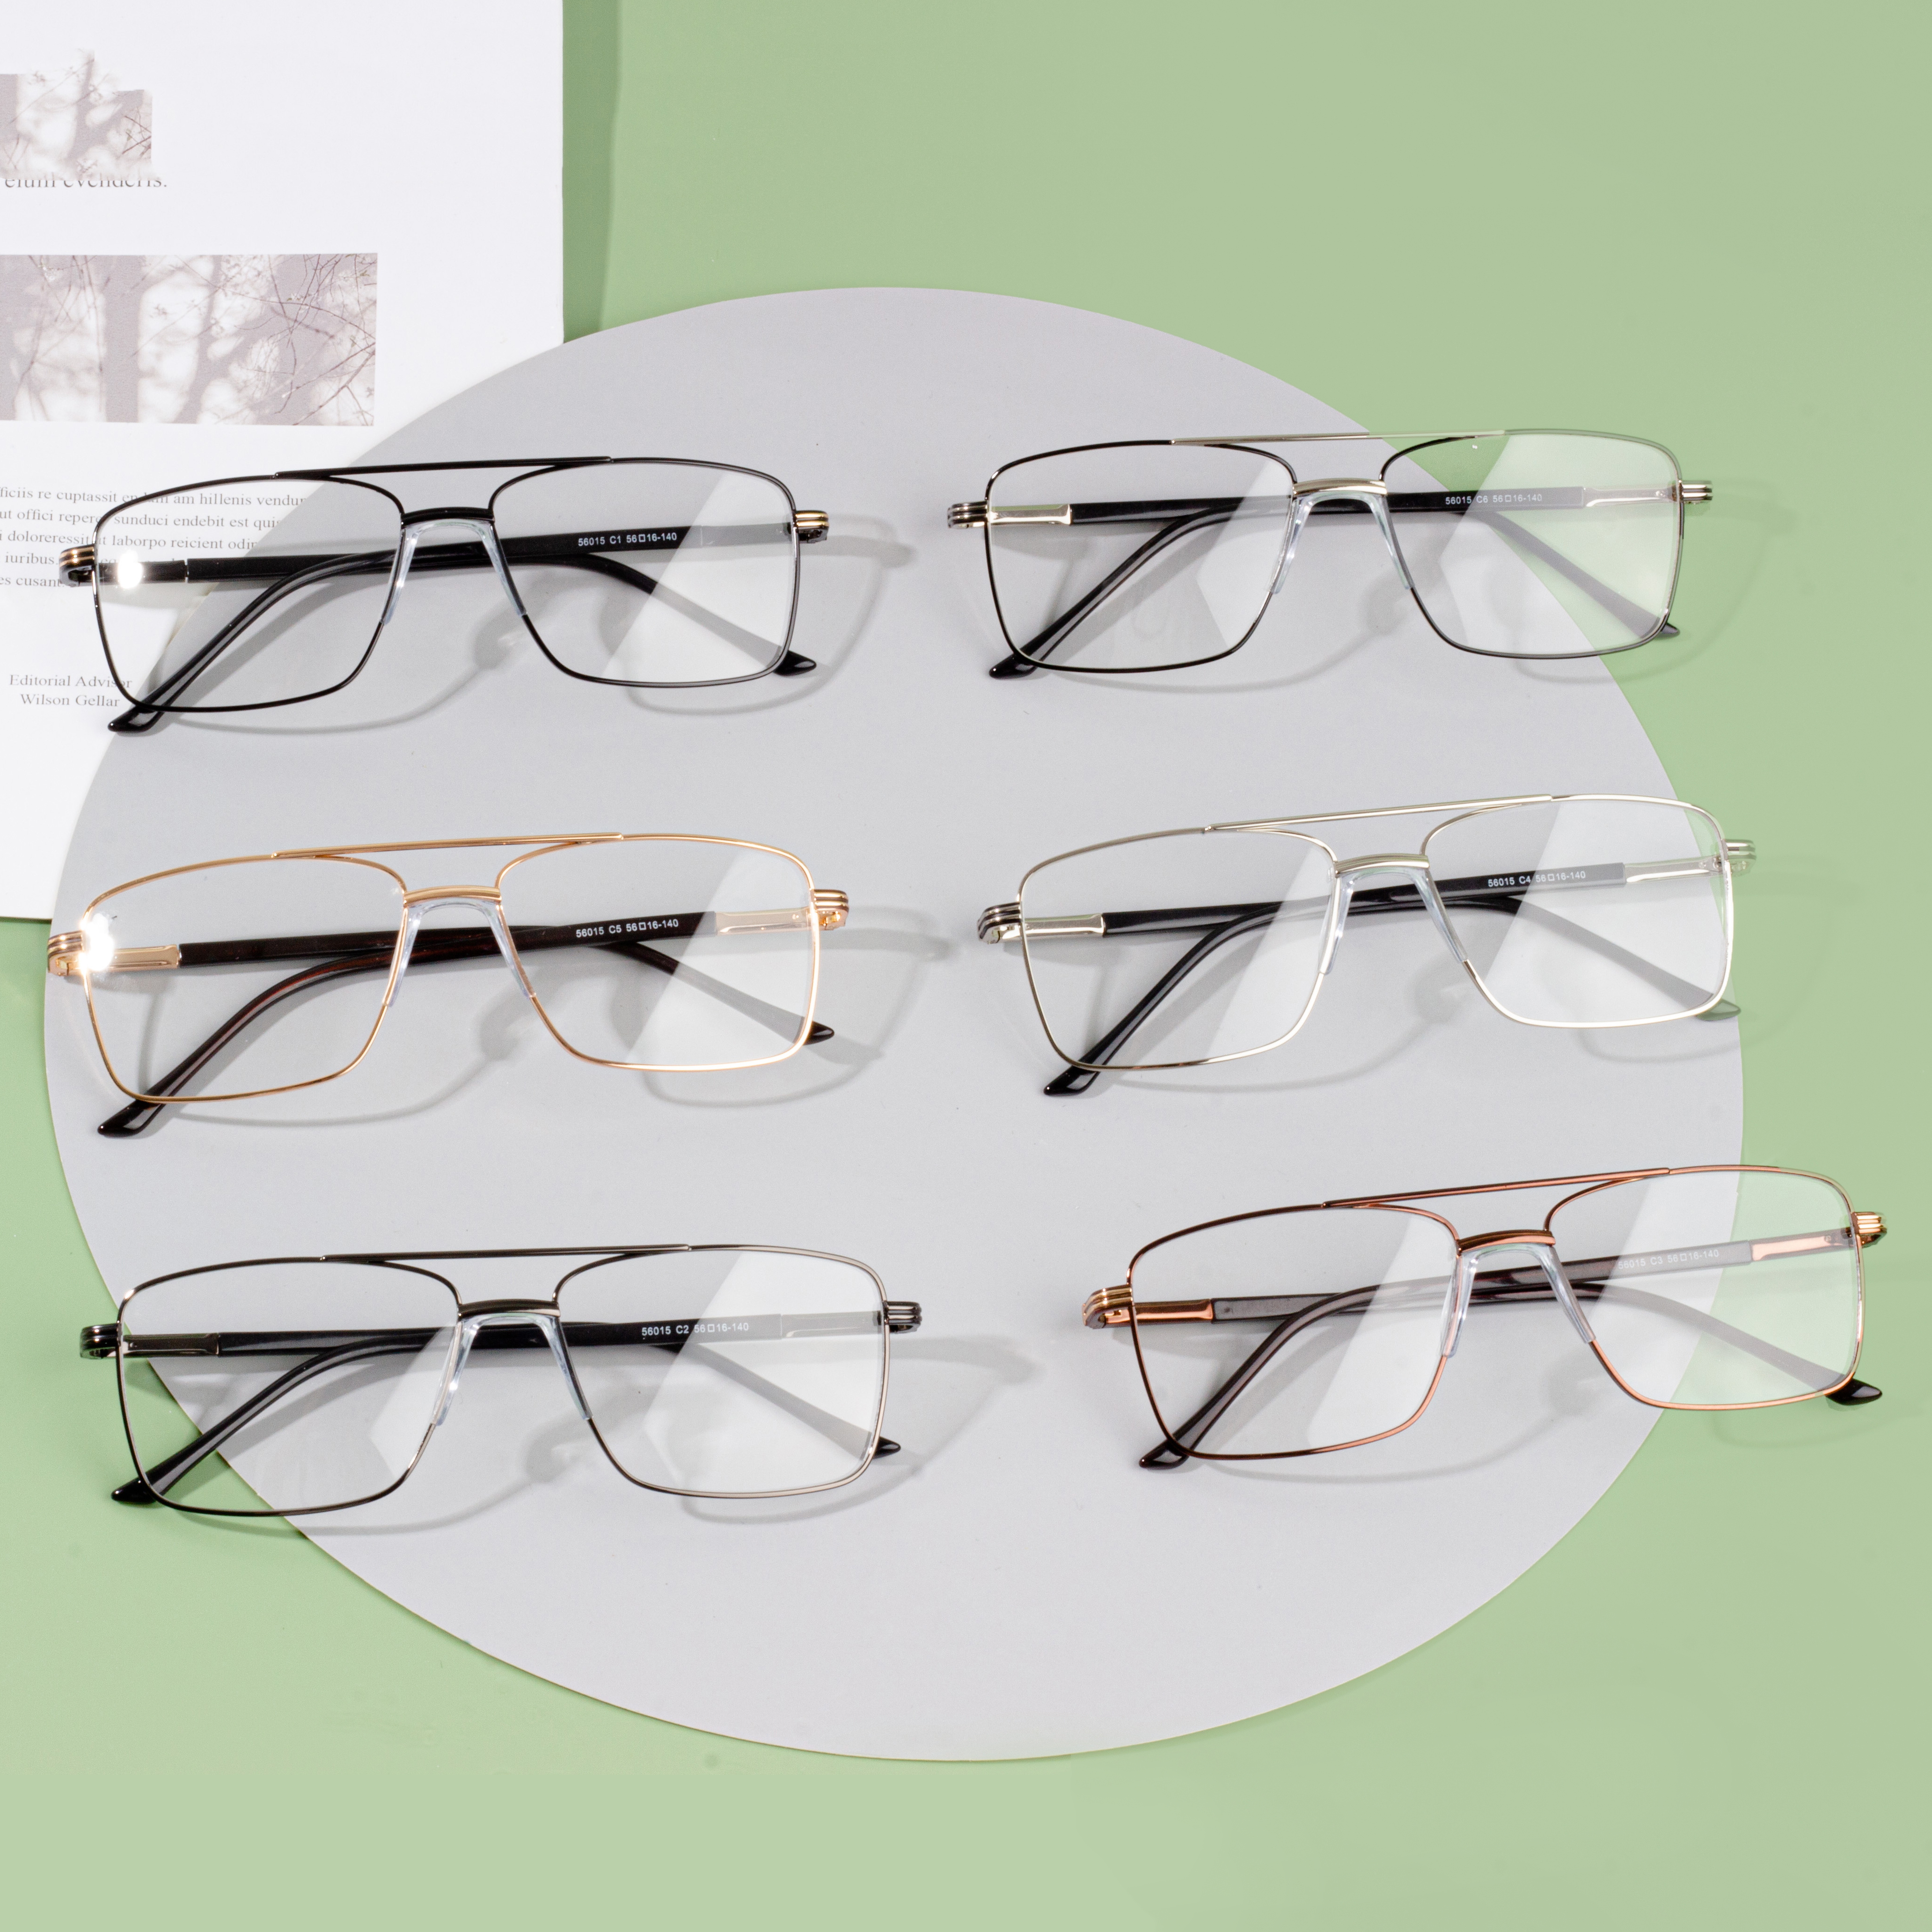 Venta directa de anteojos de metal para hombres con precio competitivo